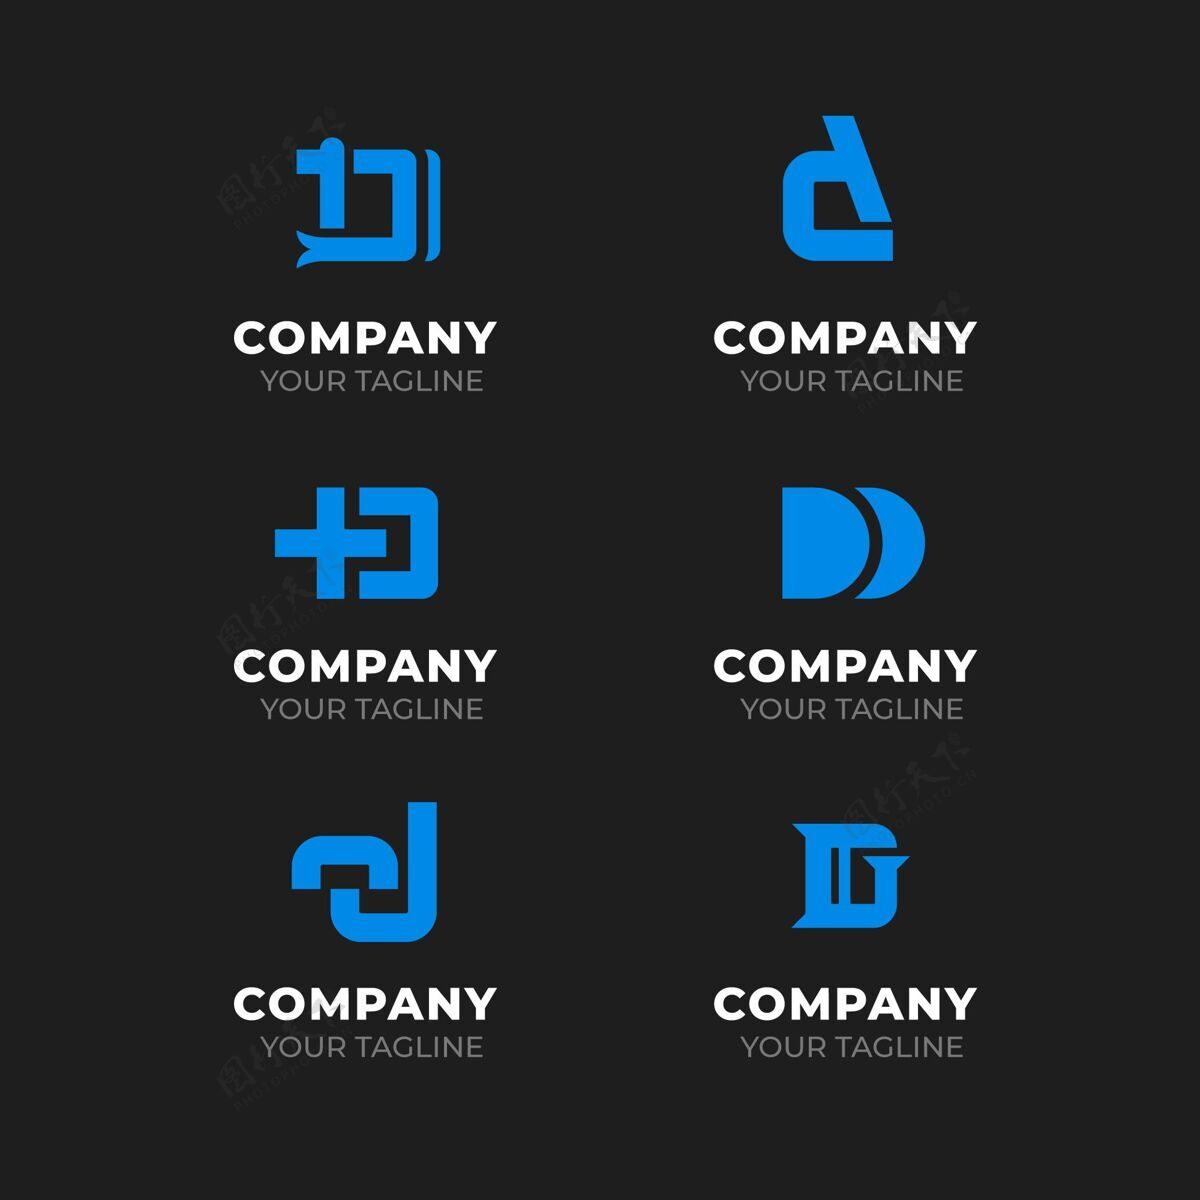 企业平面设计d标志系列包装标志企业